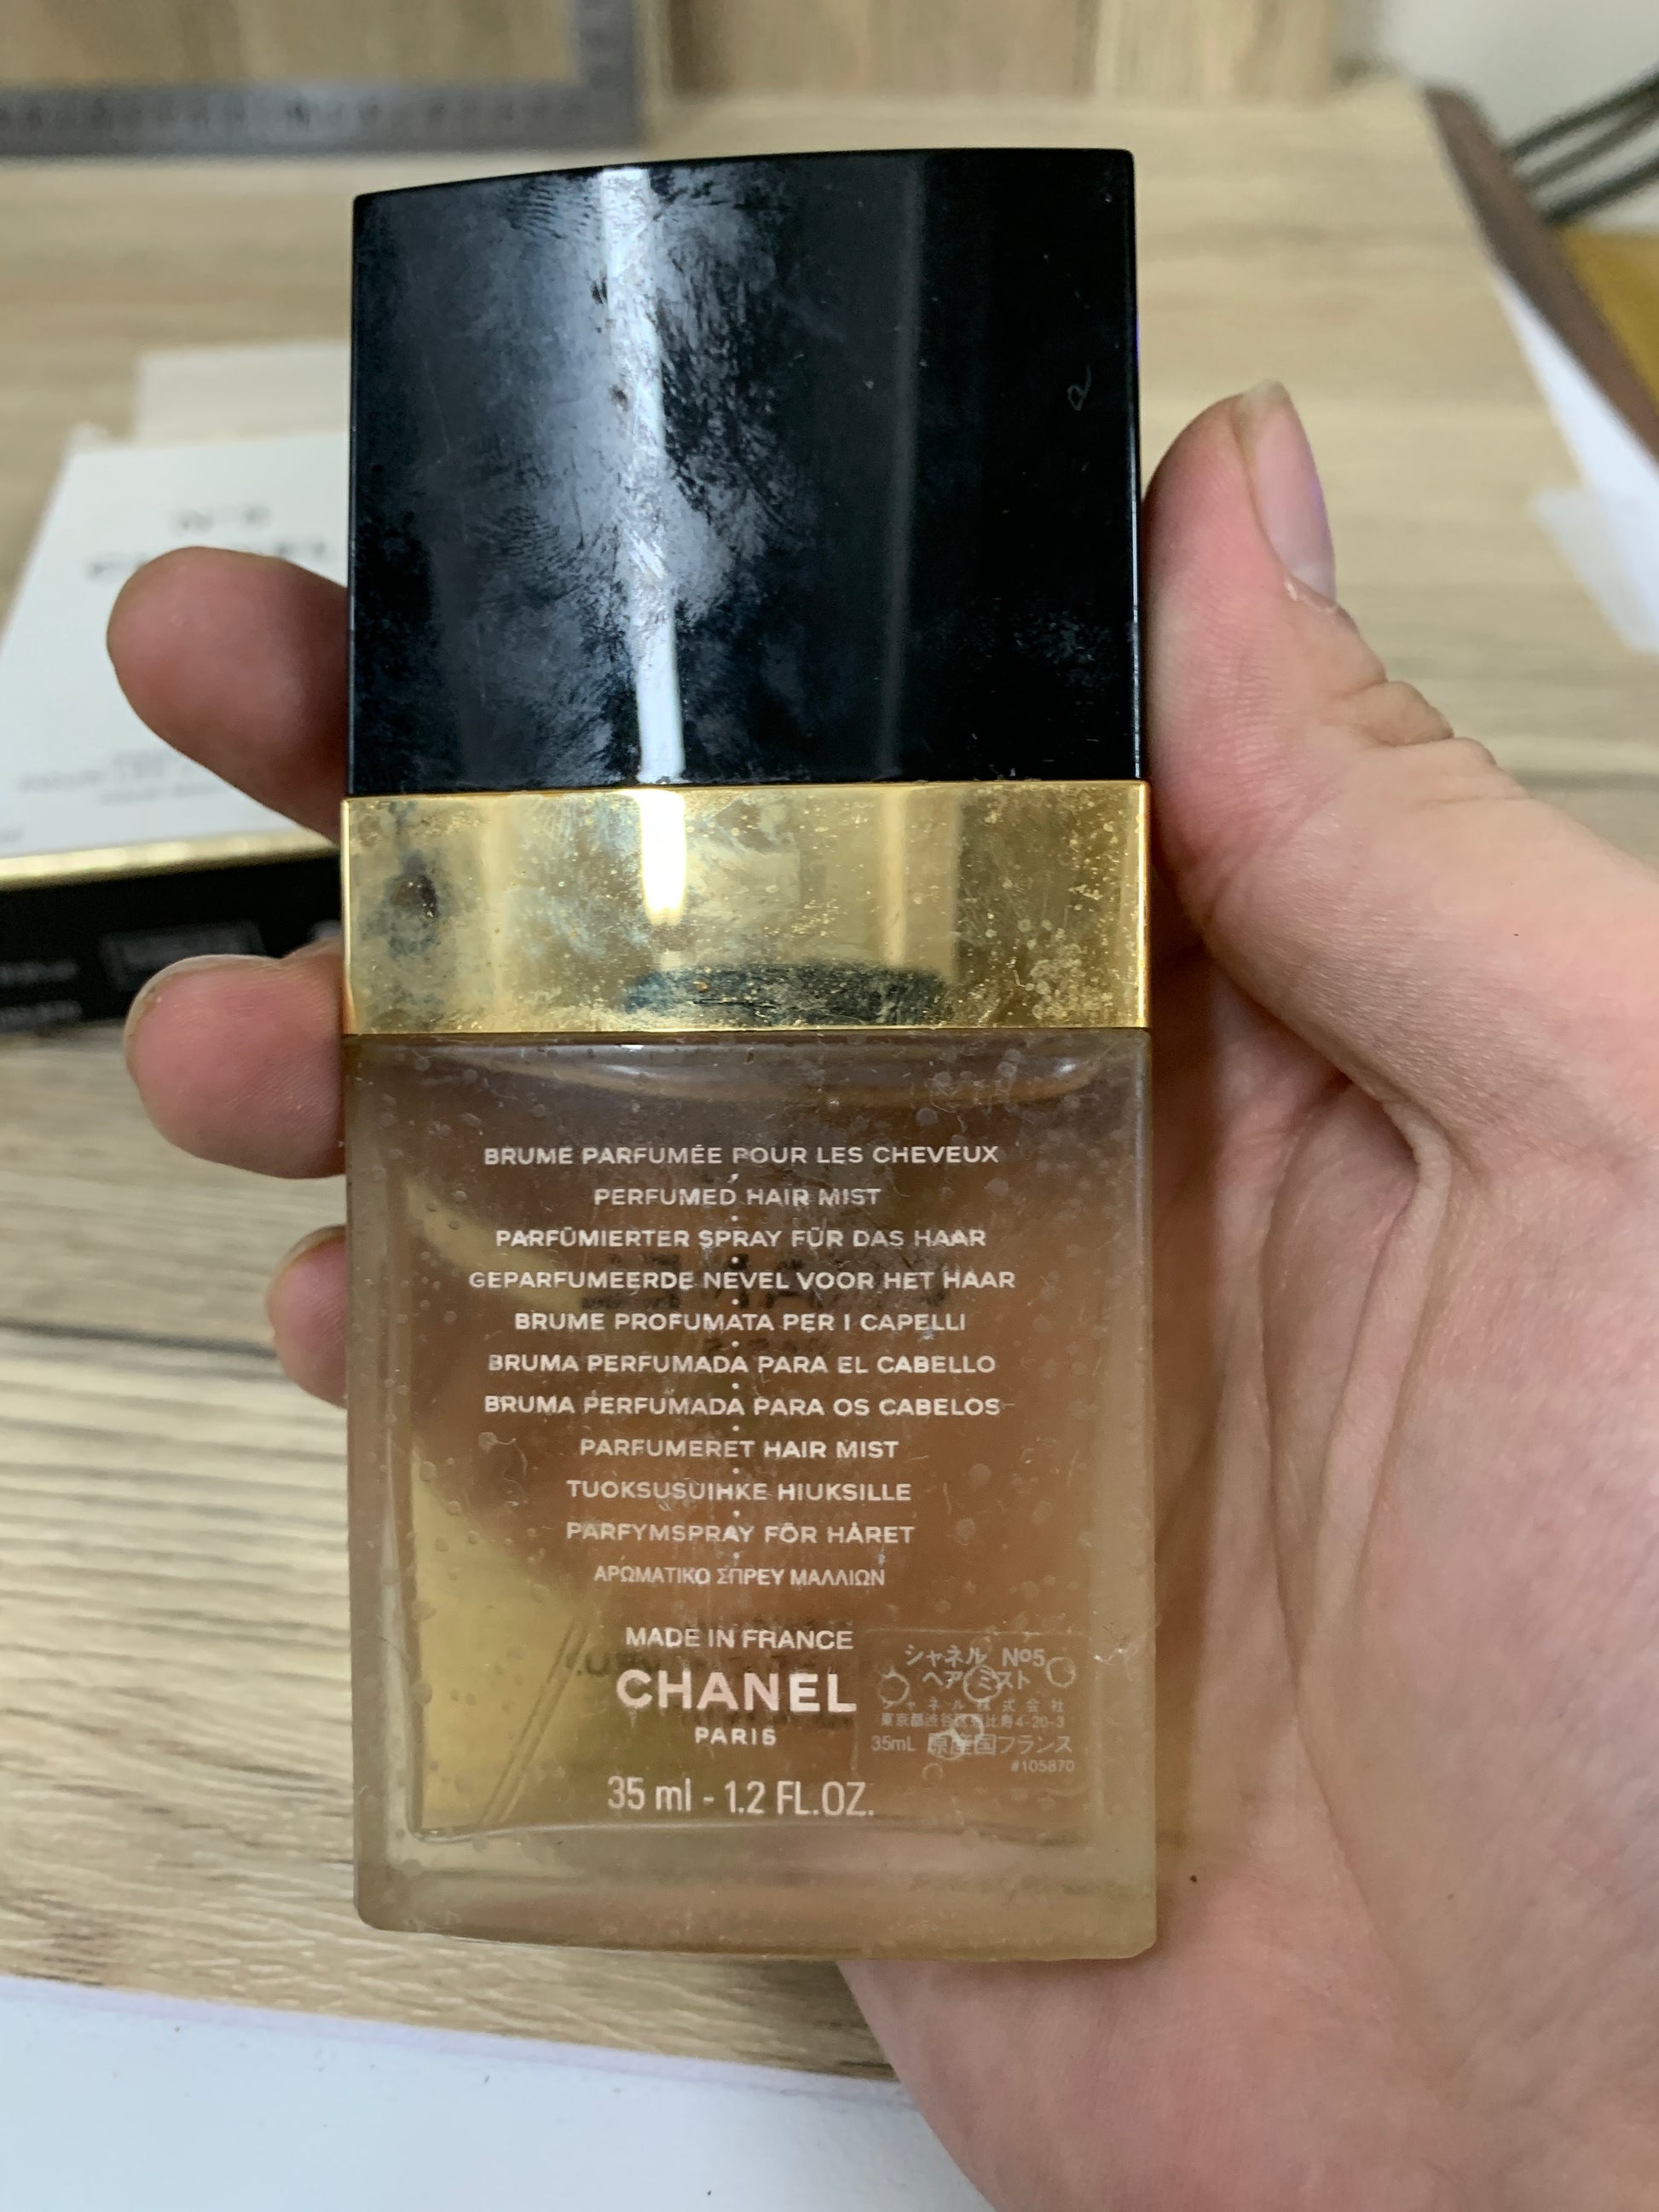 Chanel No.5 Eau de Parfum Spray